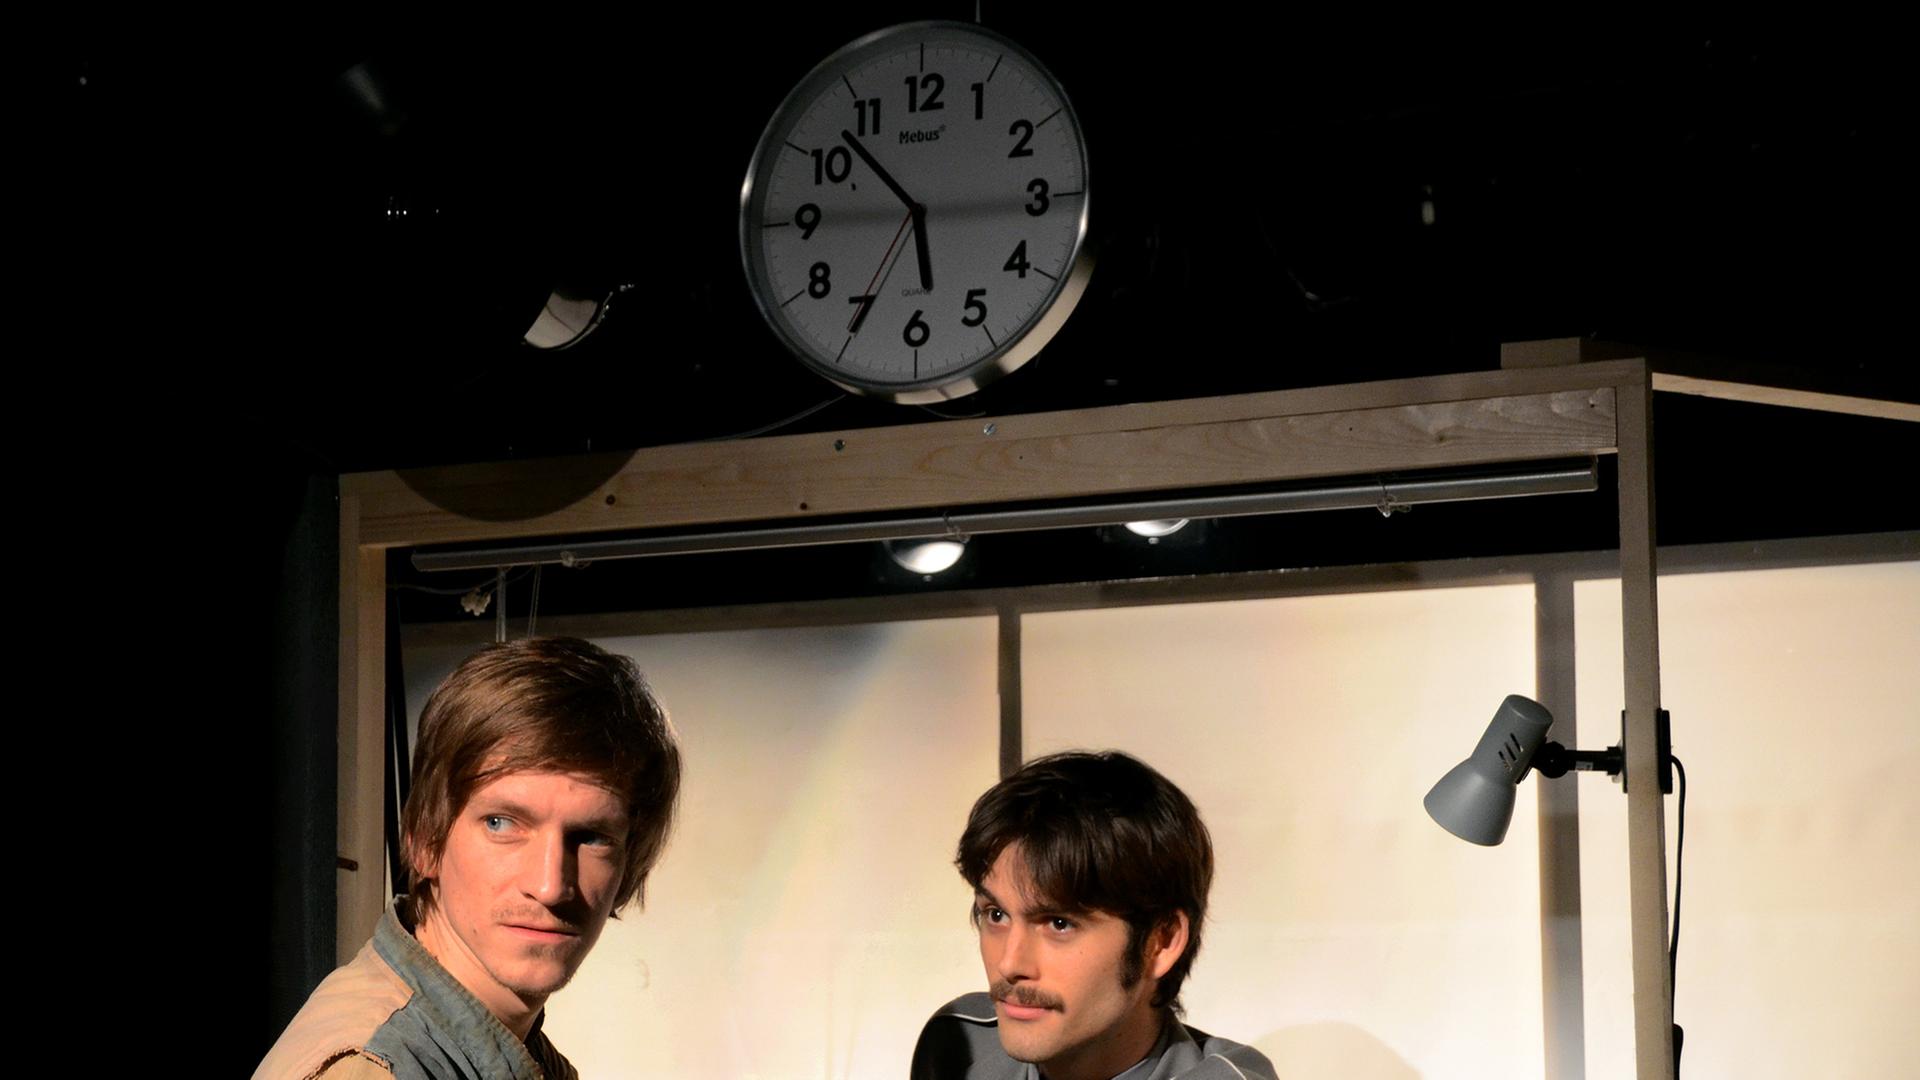 Schauspieler Lasse Marburg lehnt an einem Kontrollpunkt, hinter dem Schauspieler Philip Steimel steht, beide schauen links an der Kamera vorbei. Über ihnen zeigt eine analoge Uhr 5.52 Uhr an.